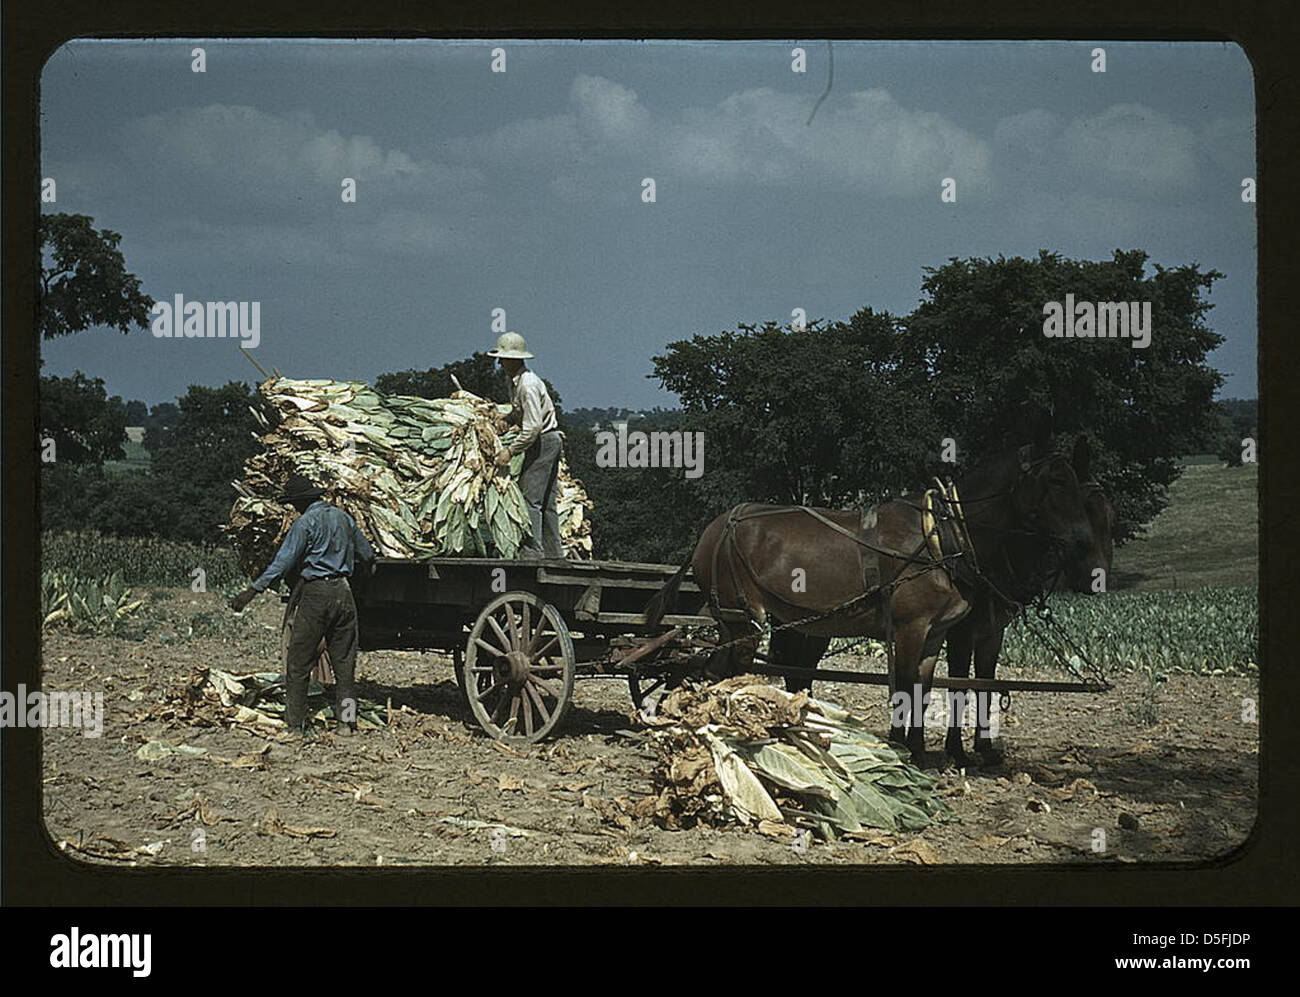 Prendendo il tabacco burley dai campi, dopo che è stato tagliato ad asciugare e curare nel fienile, nella fattoria Russell Spears', vicino a Lexington, Ky. (LOC) Foto Stock